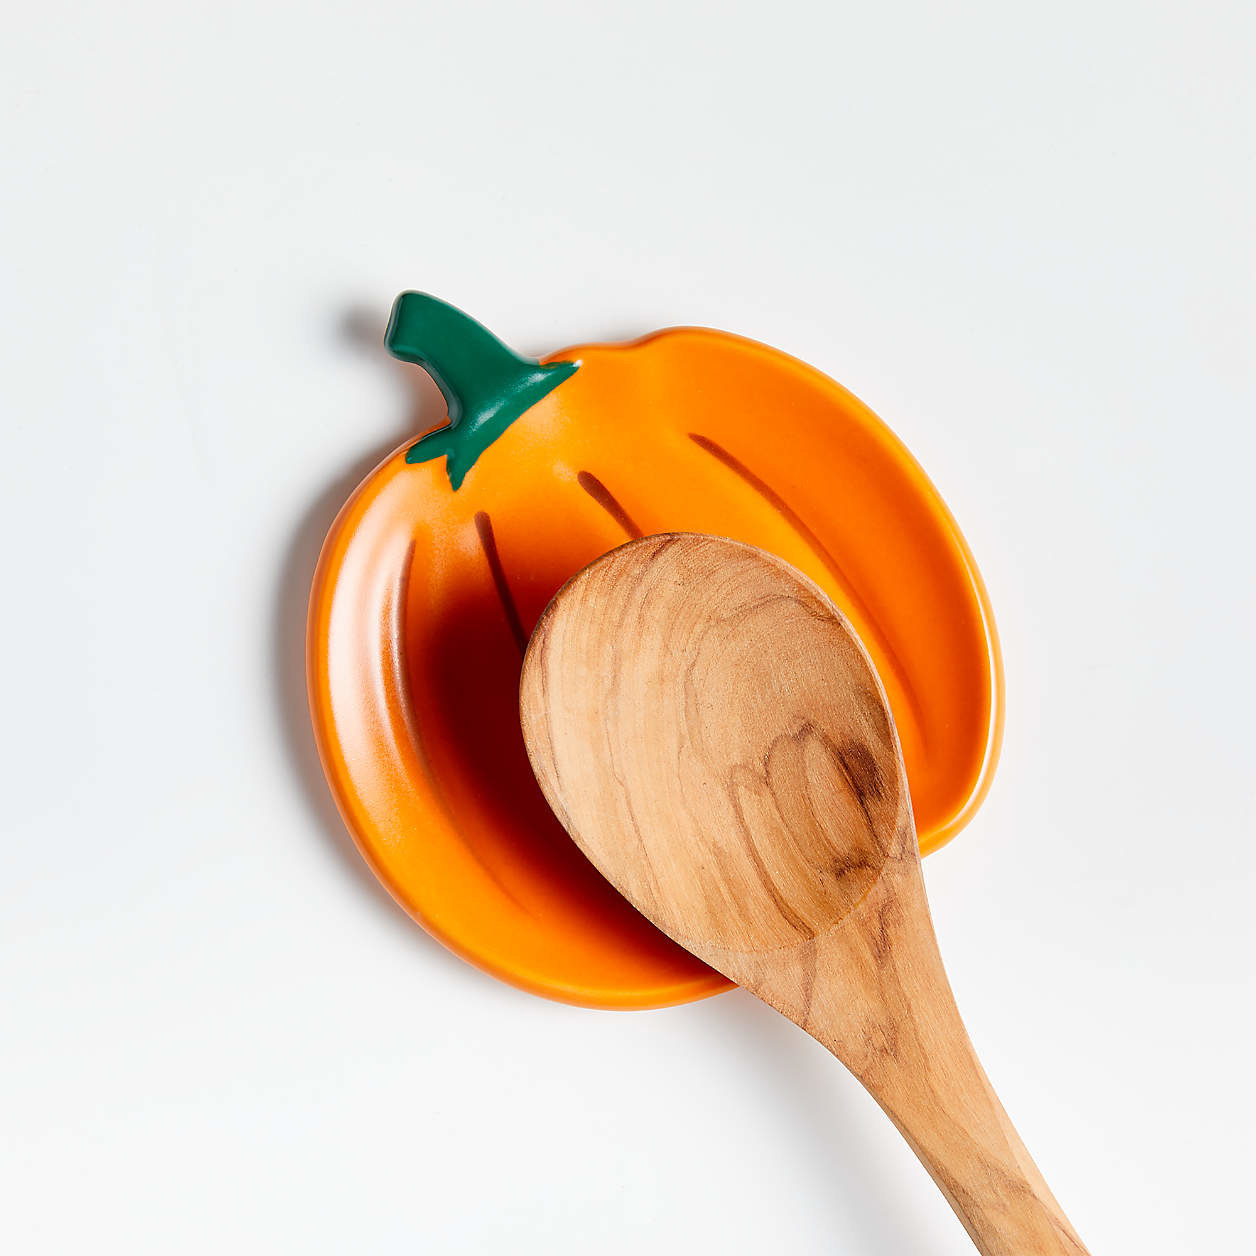 A spoon resting on an orange pumpkin spoon rest